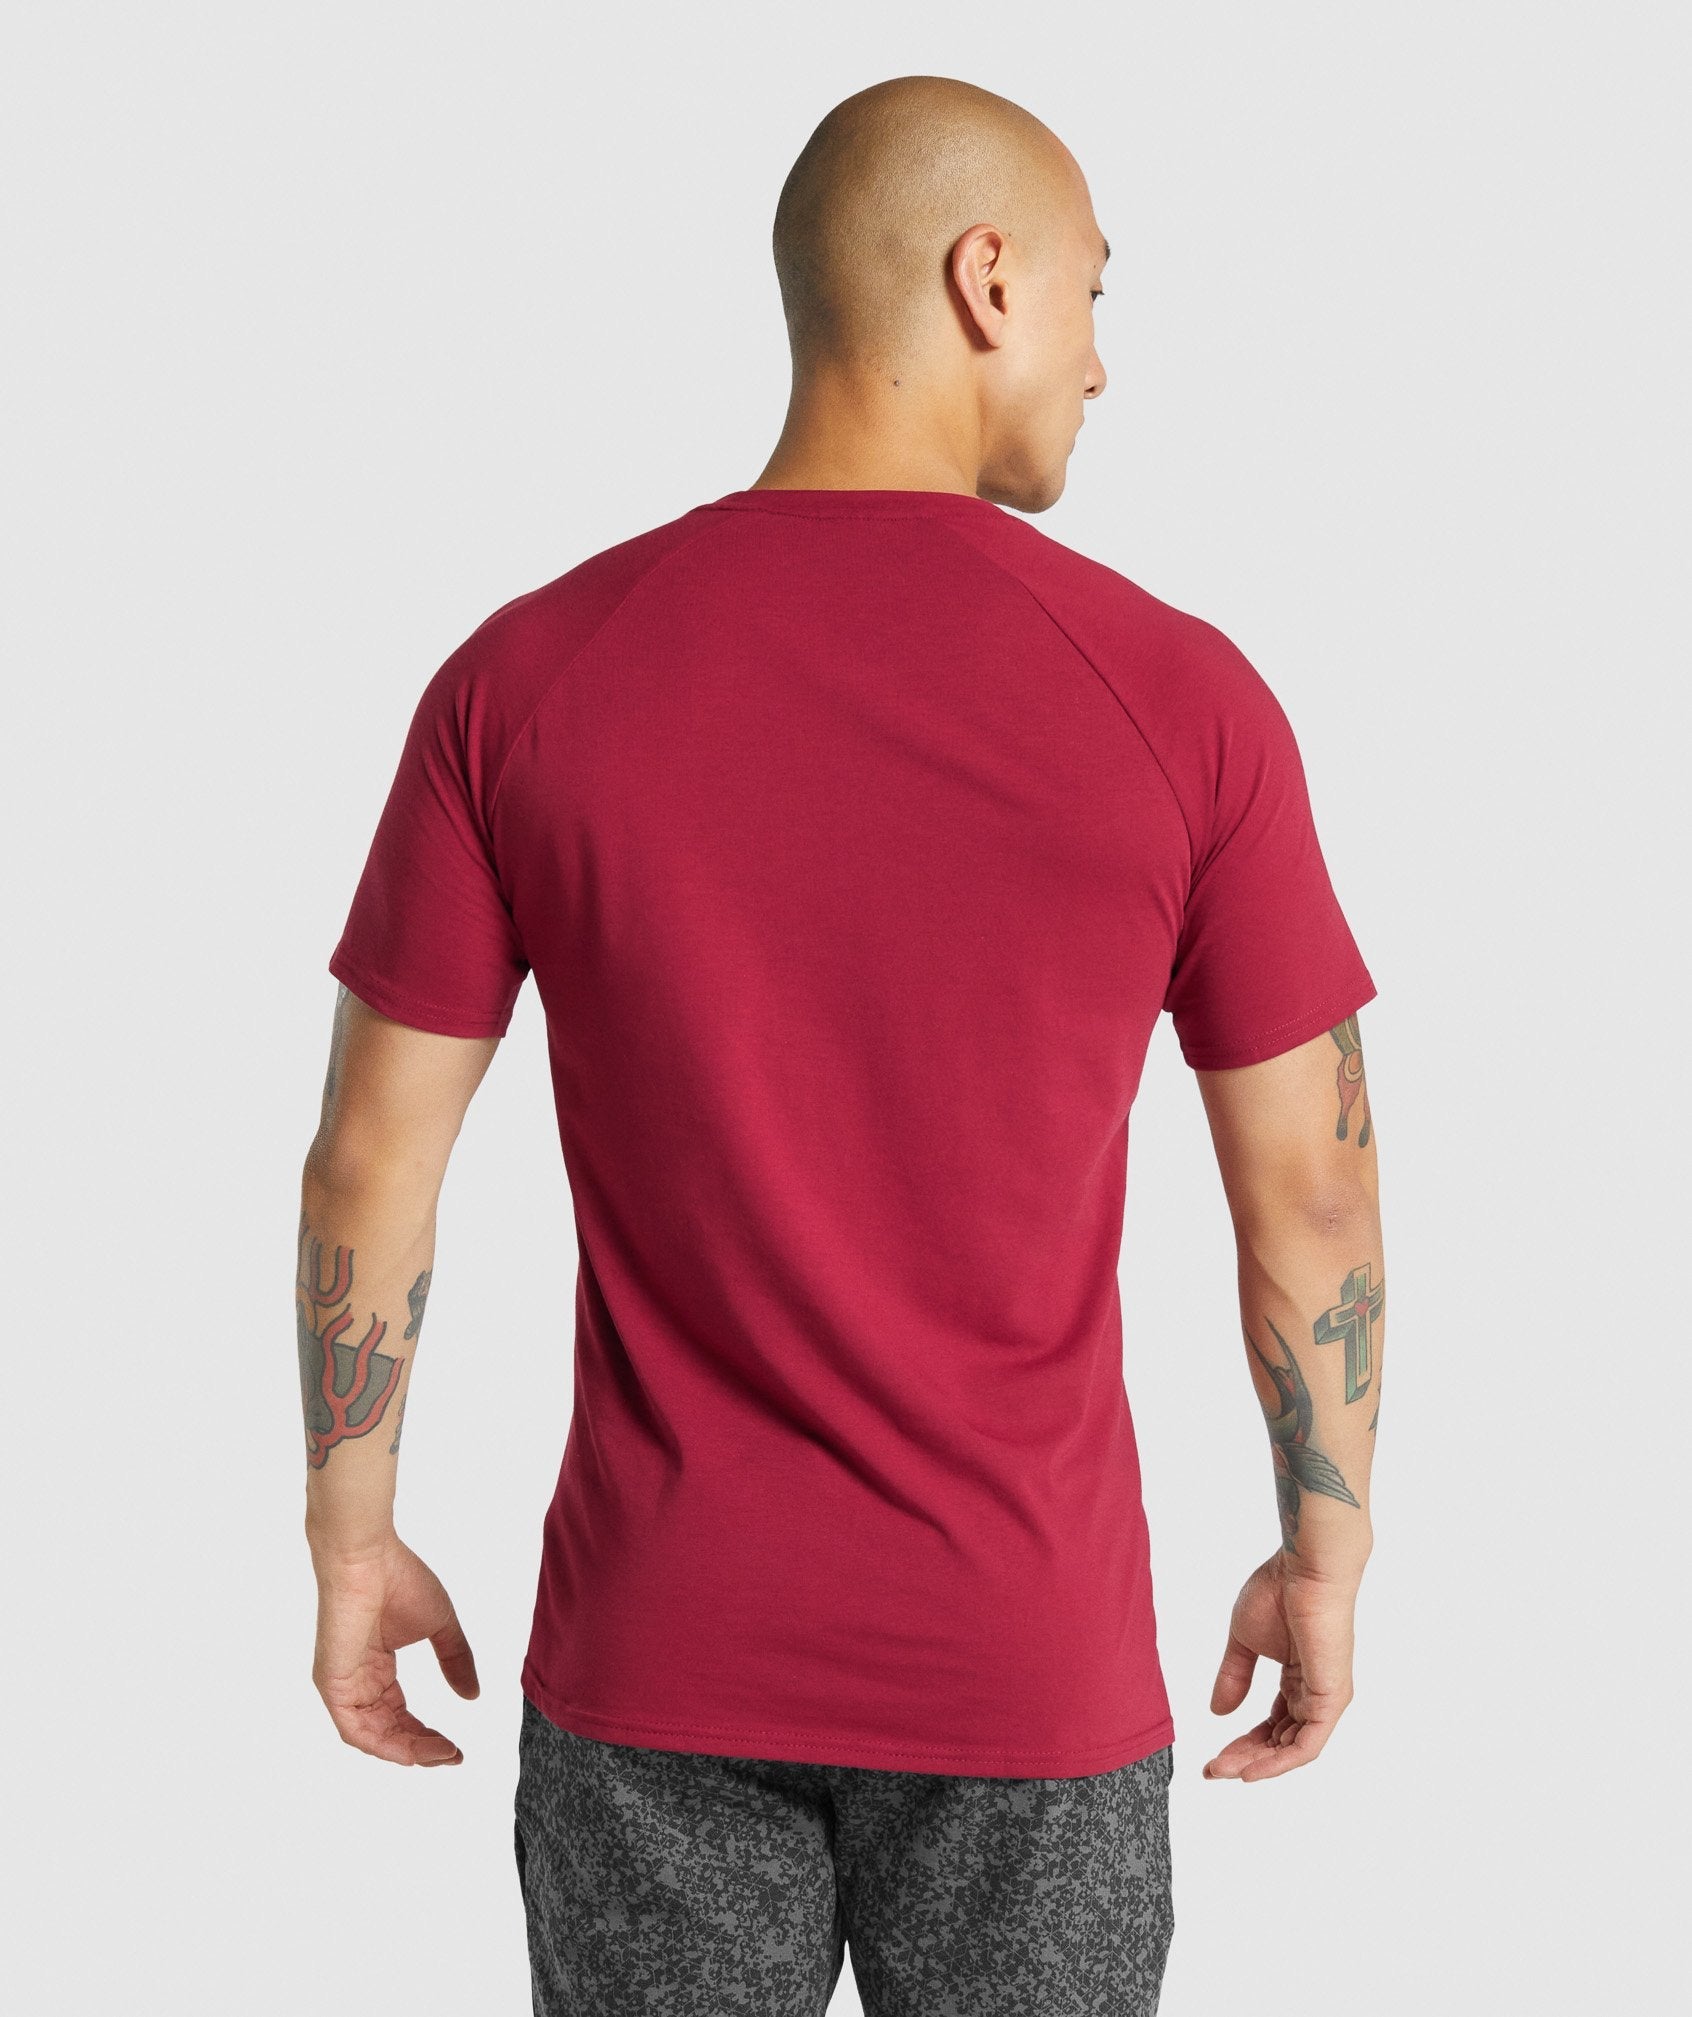 Gymshark Critical 2.0 T-Shirt - Burgundy